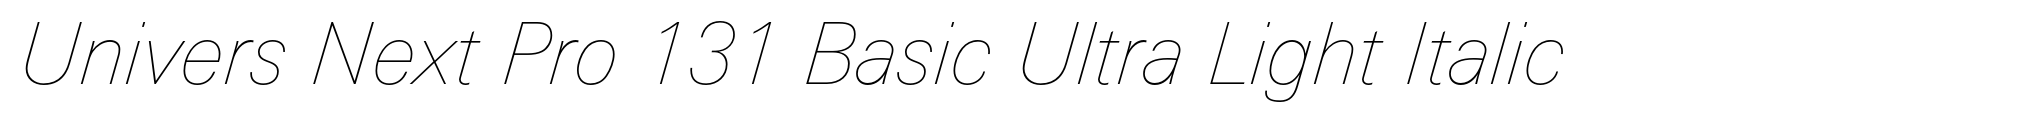 Univers Next Pro 131 Basic Ultra Light Italic image